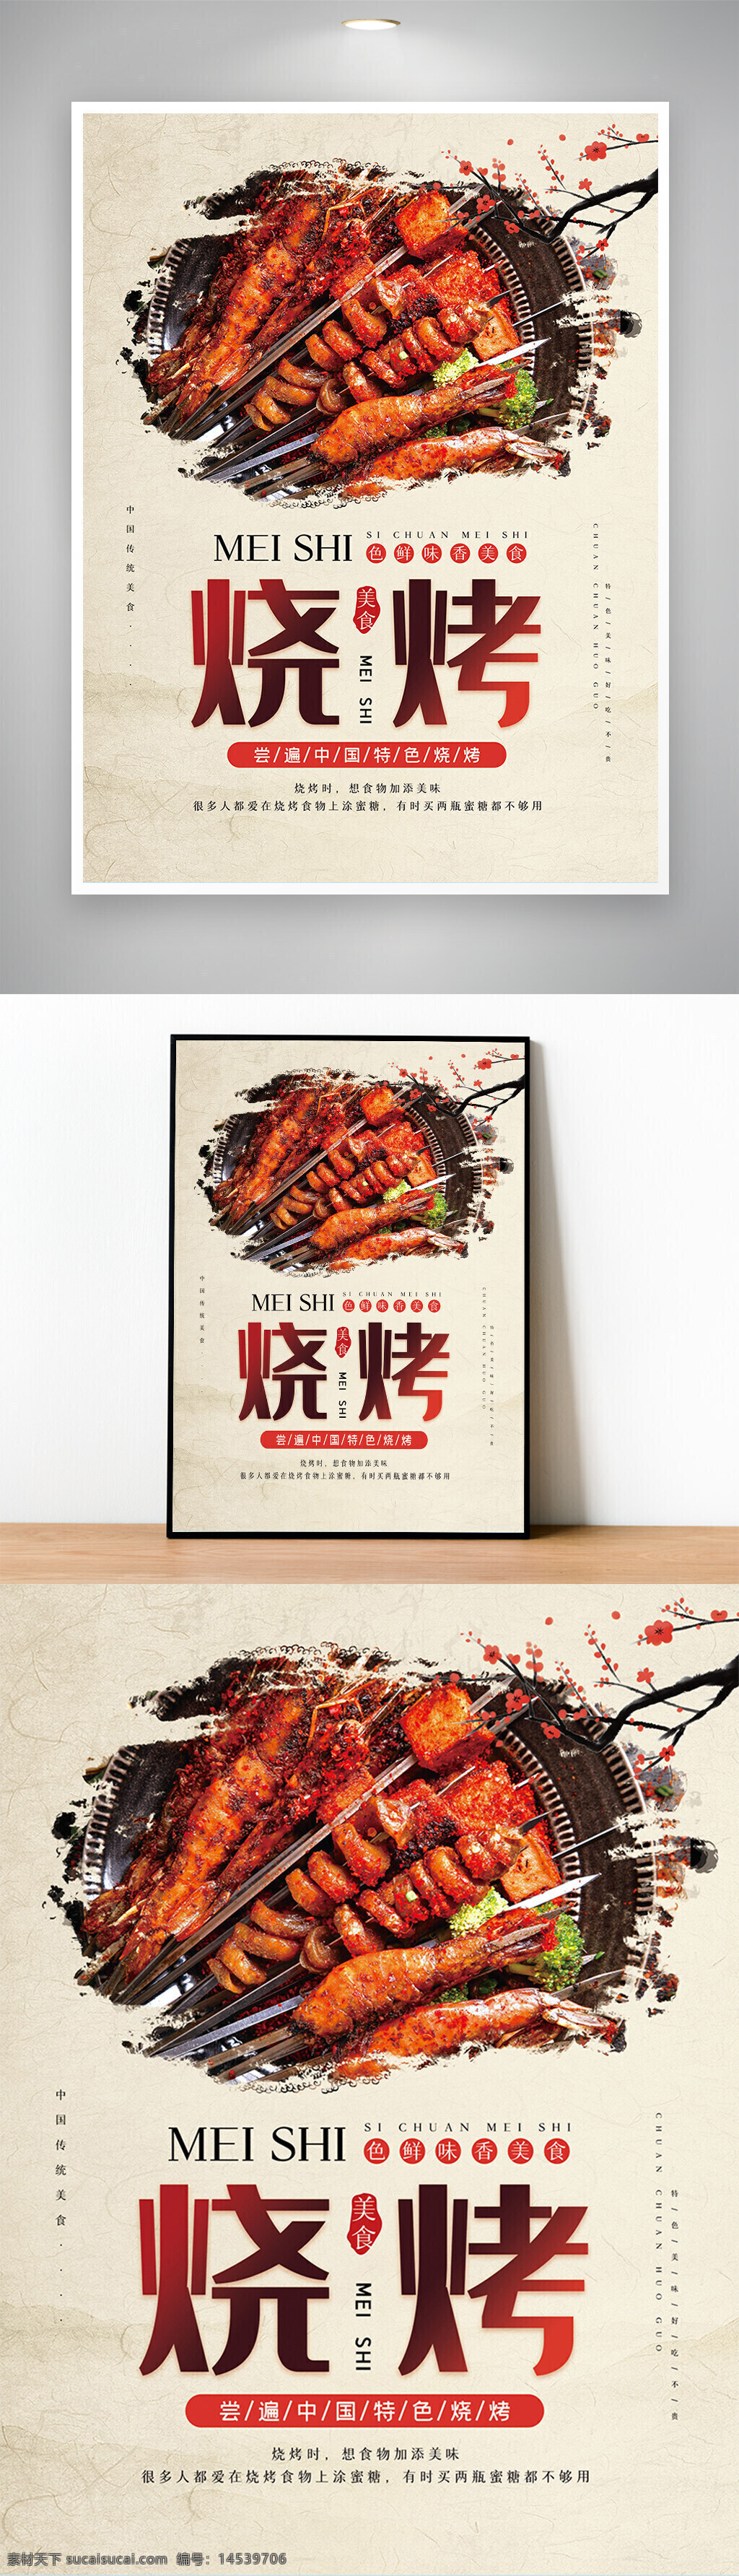 米色烧烤店宣传促销海报 特色烧烤 东北烧烤 美味烧烤 烧烤 烧烤海报 烤串